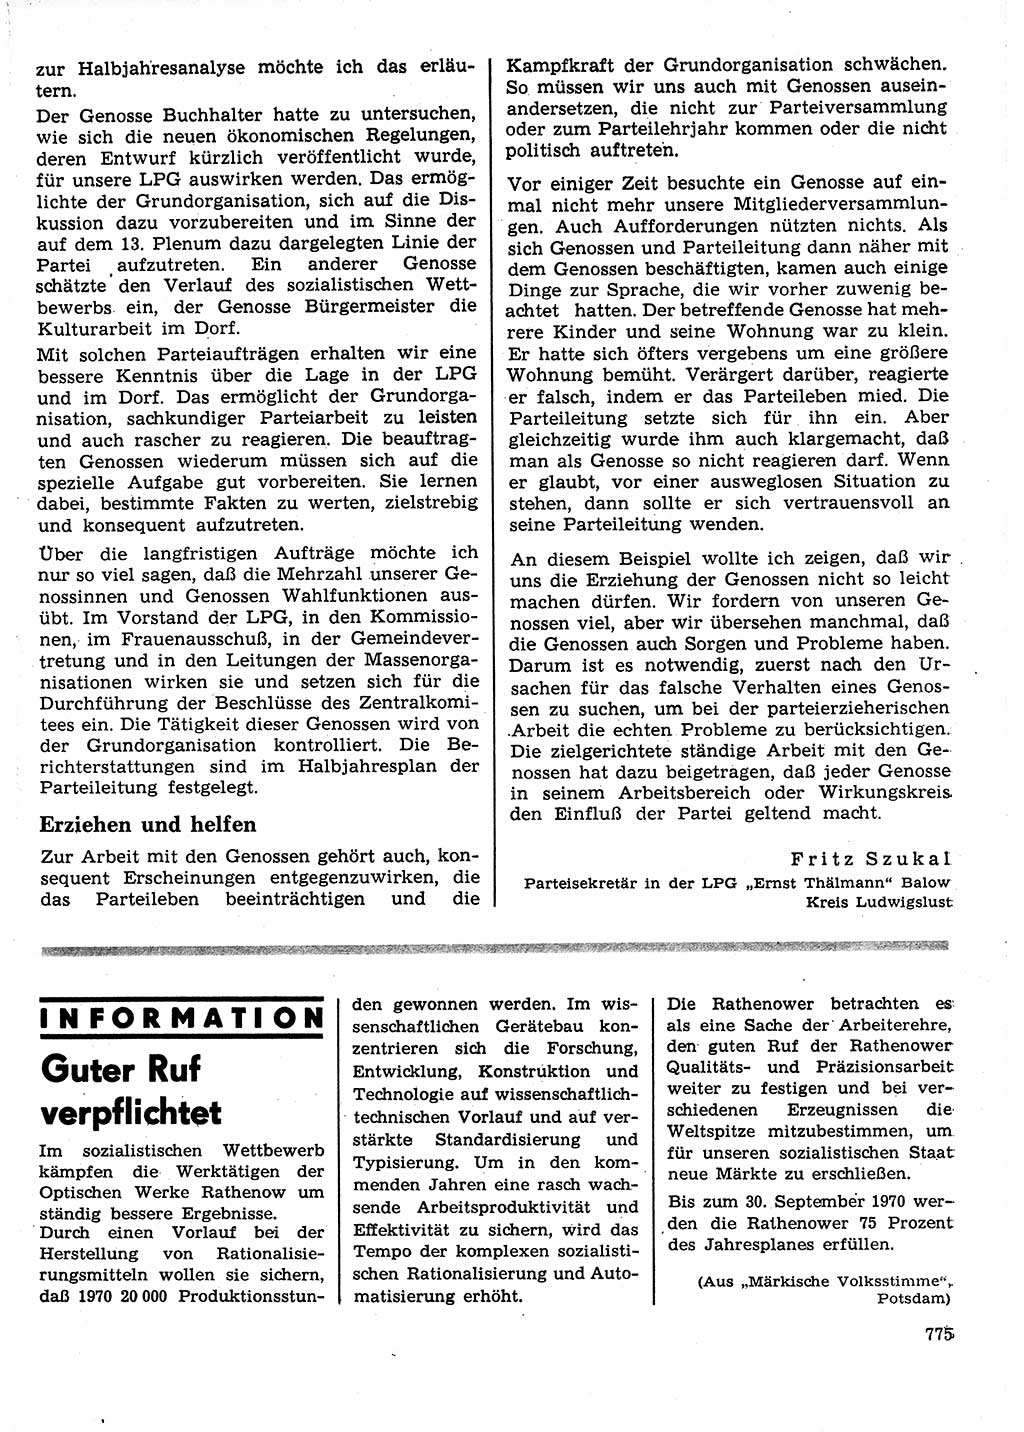 Neuer Weg (NW), Organ des Zentralkomitees (ZK) der SED (Sozialistische Einheitspartei Deutschlands) für Fragen des Parteilebens, 25. Jahrgang [Deutsche Demokratische Republik (DDR)] 1970, Seite 775 (NW ZK SED DDR 1970, S. 775)